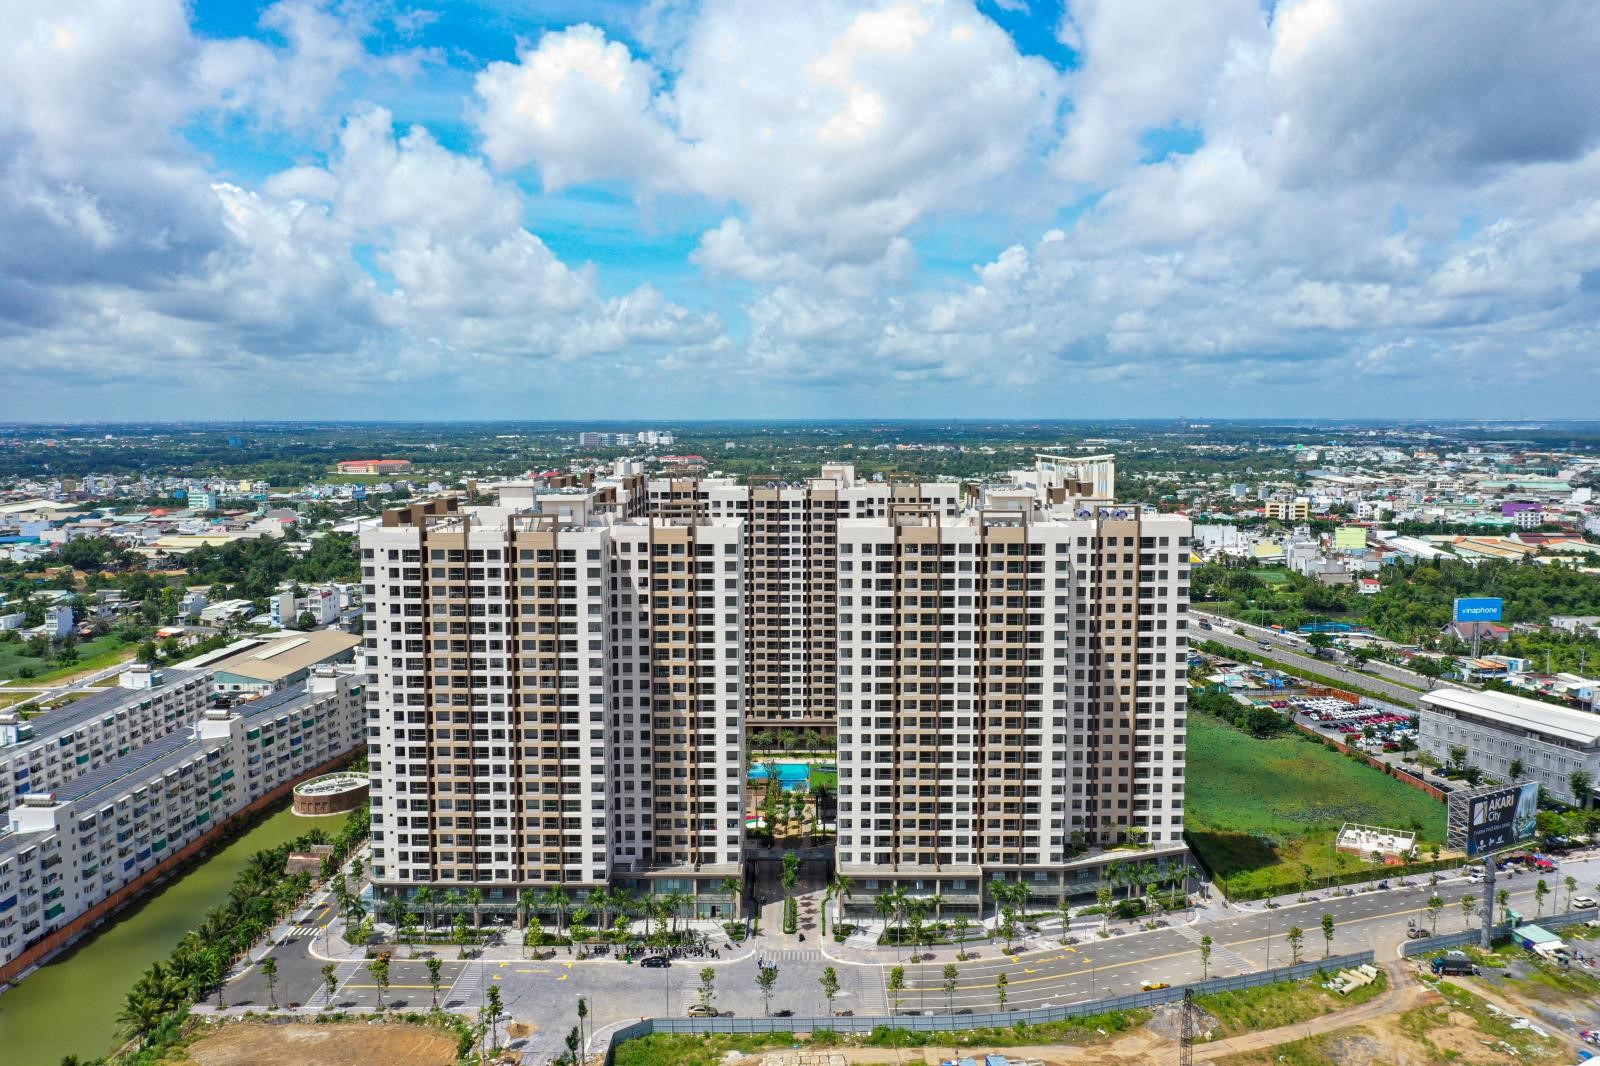 Giá chung cư tại TP Hồ Chí Minh liên tục “lập đỉnh”, những dự án nào có giá dưới 2 tỷ đồng/căn?